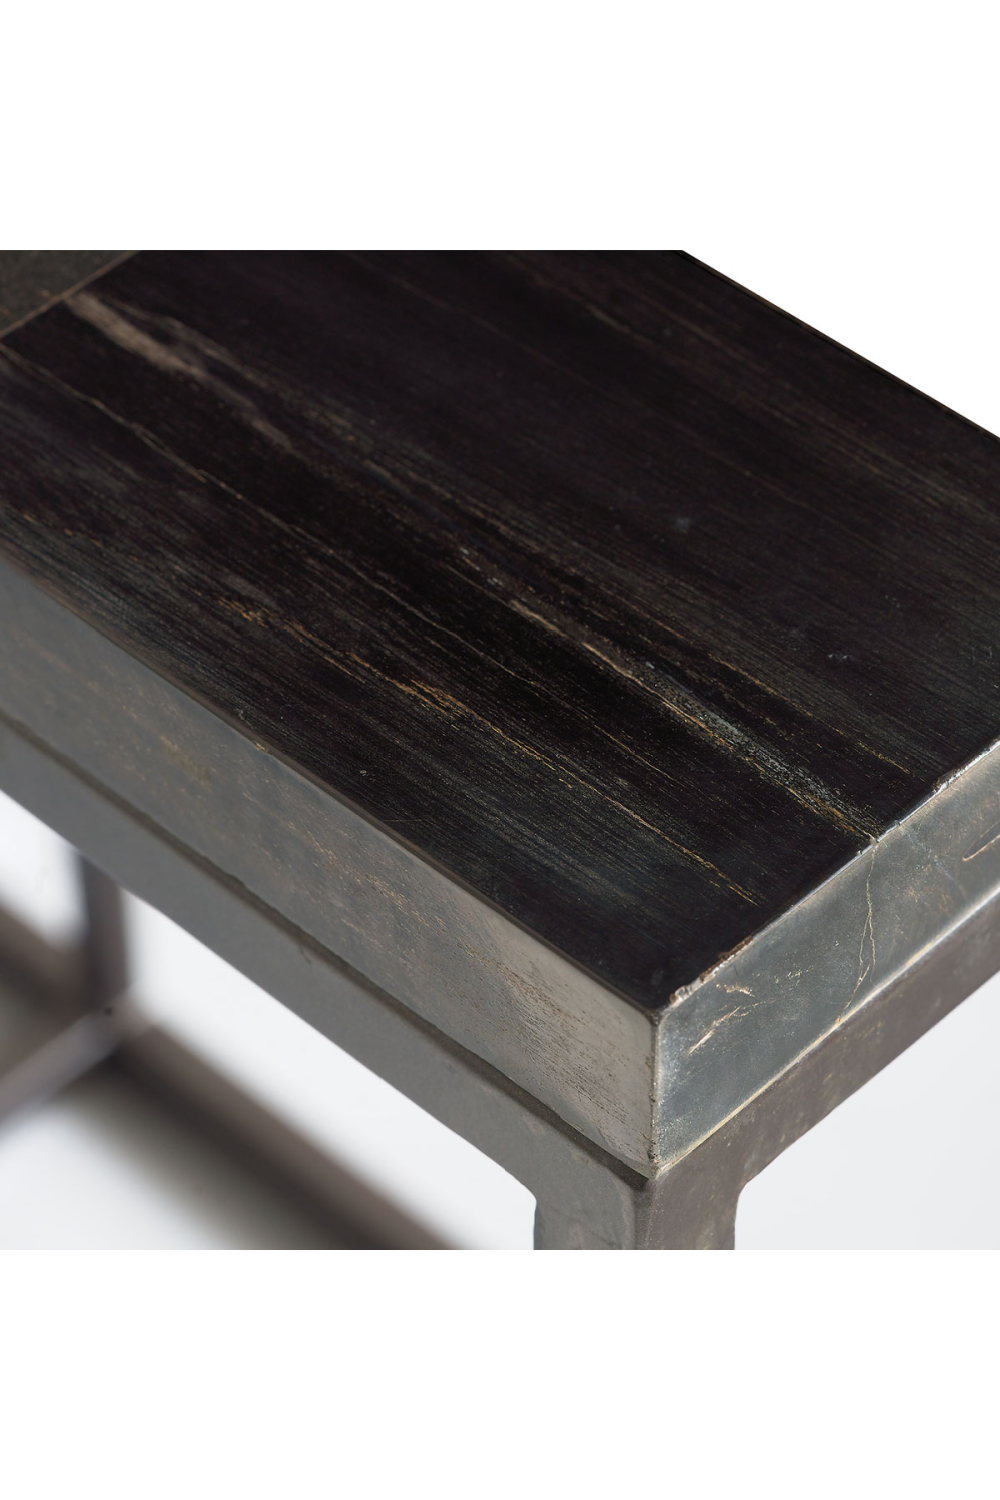 Black Petrified Wood Console Table | Andrew Martin Raife | OROA.com